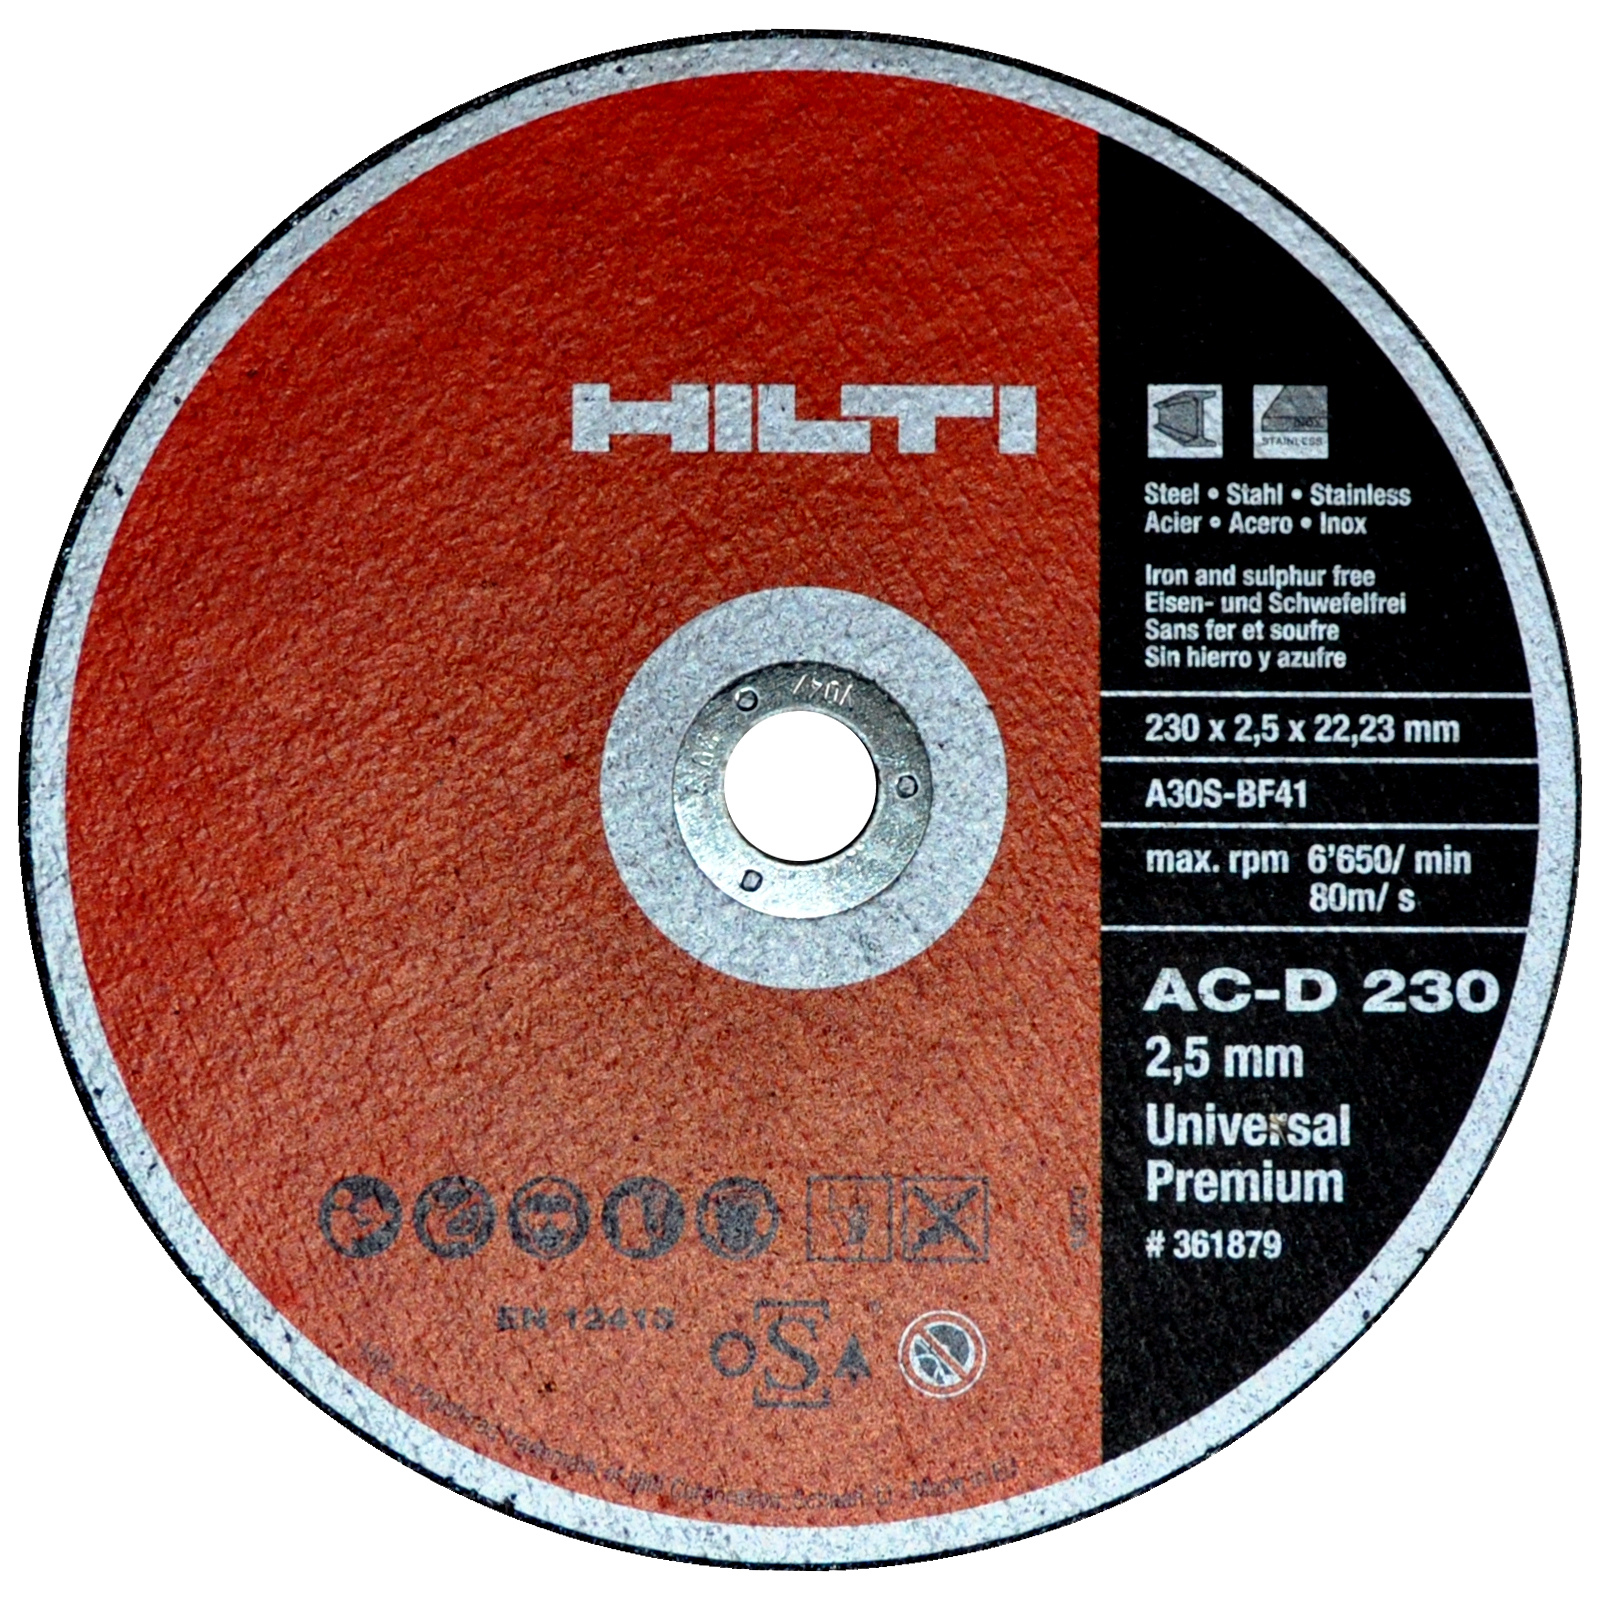   1 |  | Hilti -  -  2302,522,23     A60SBF41 6650 /  21963-2002